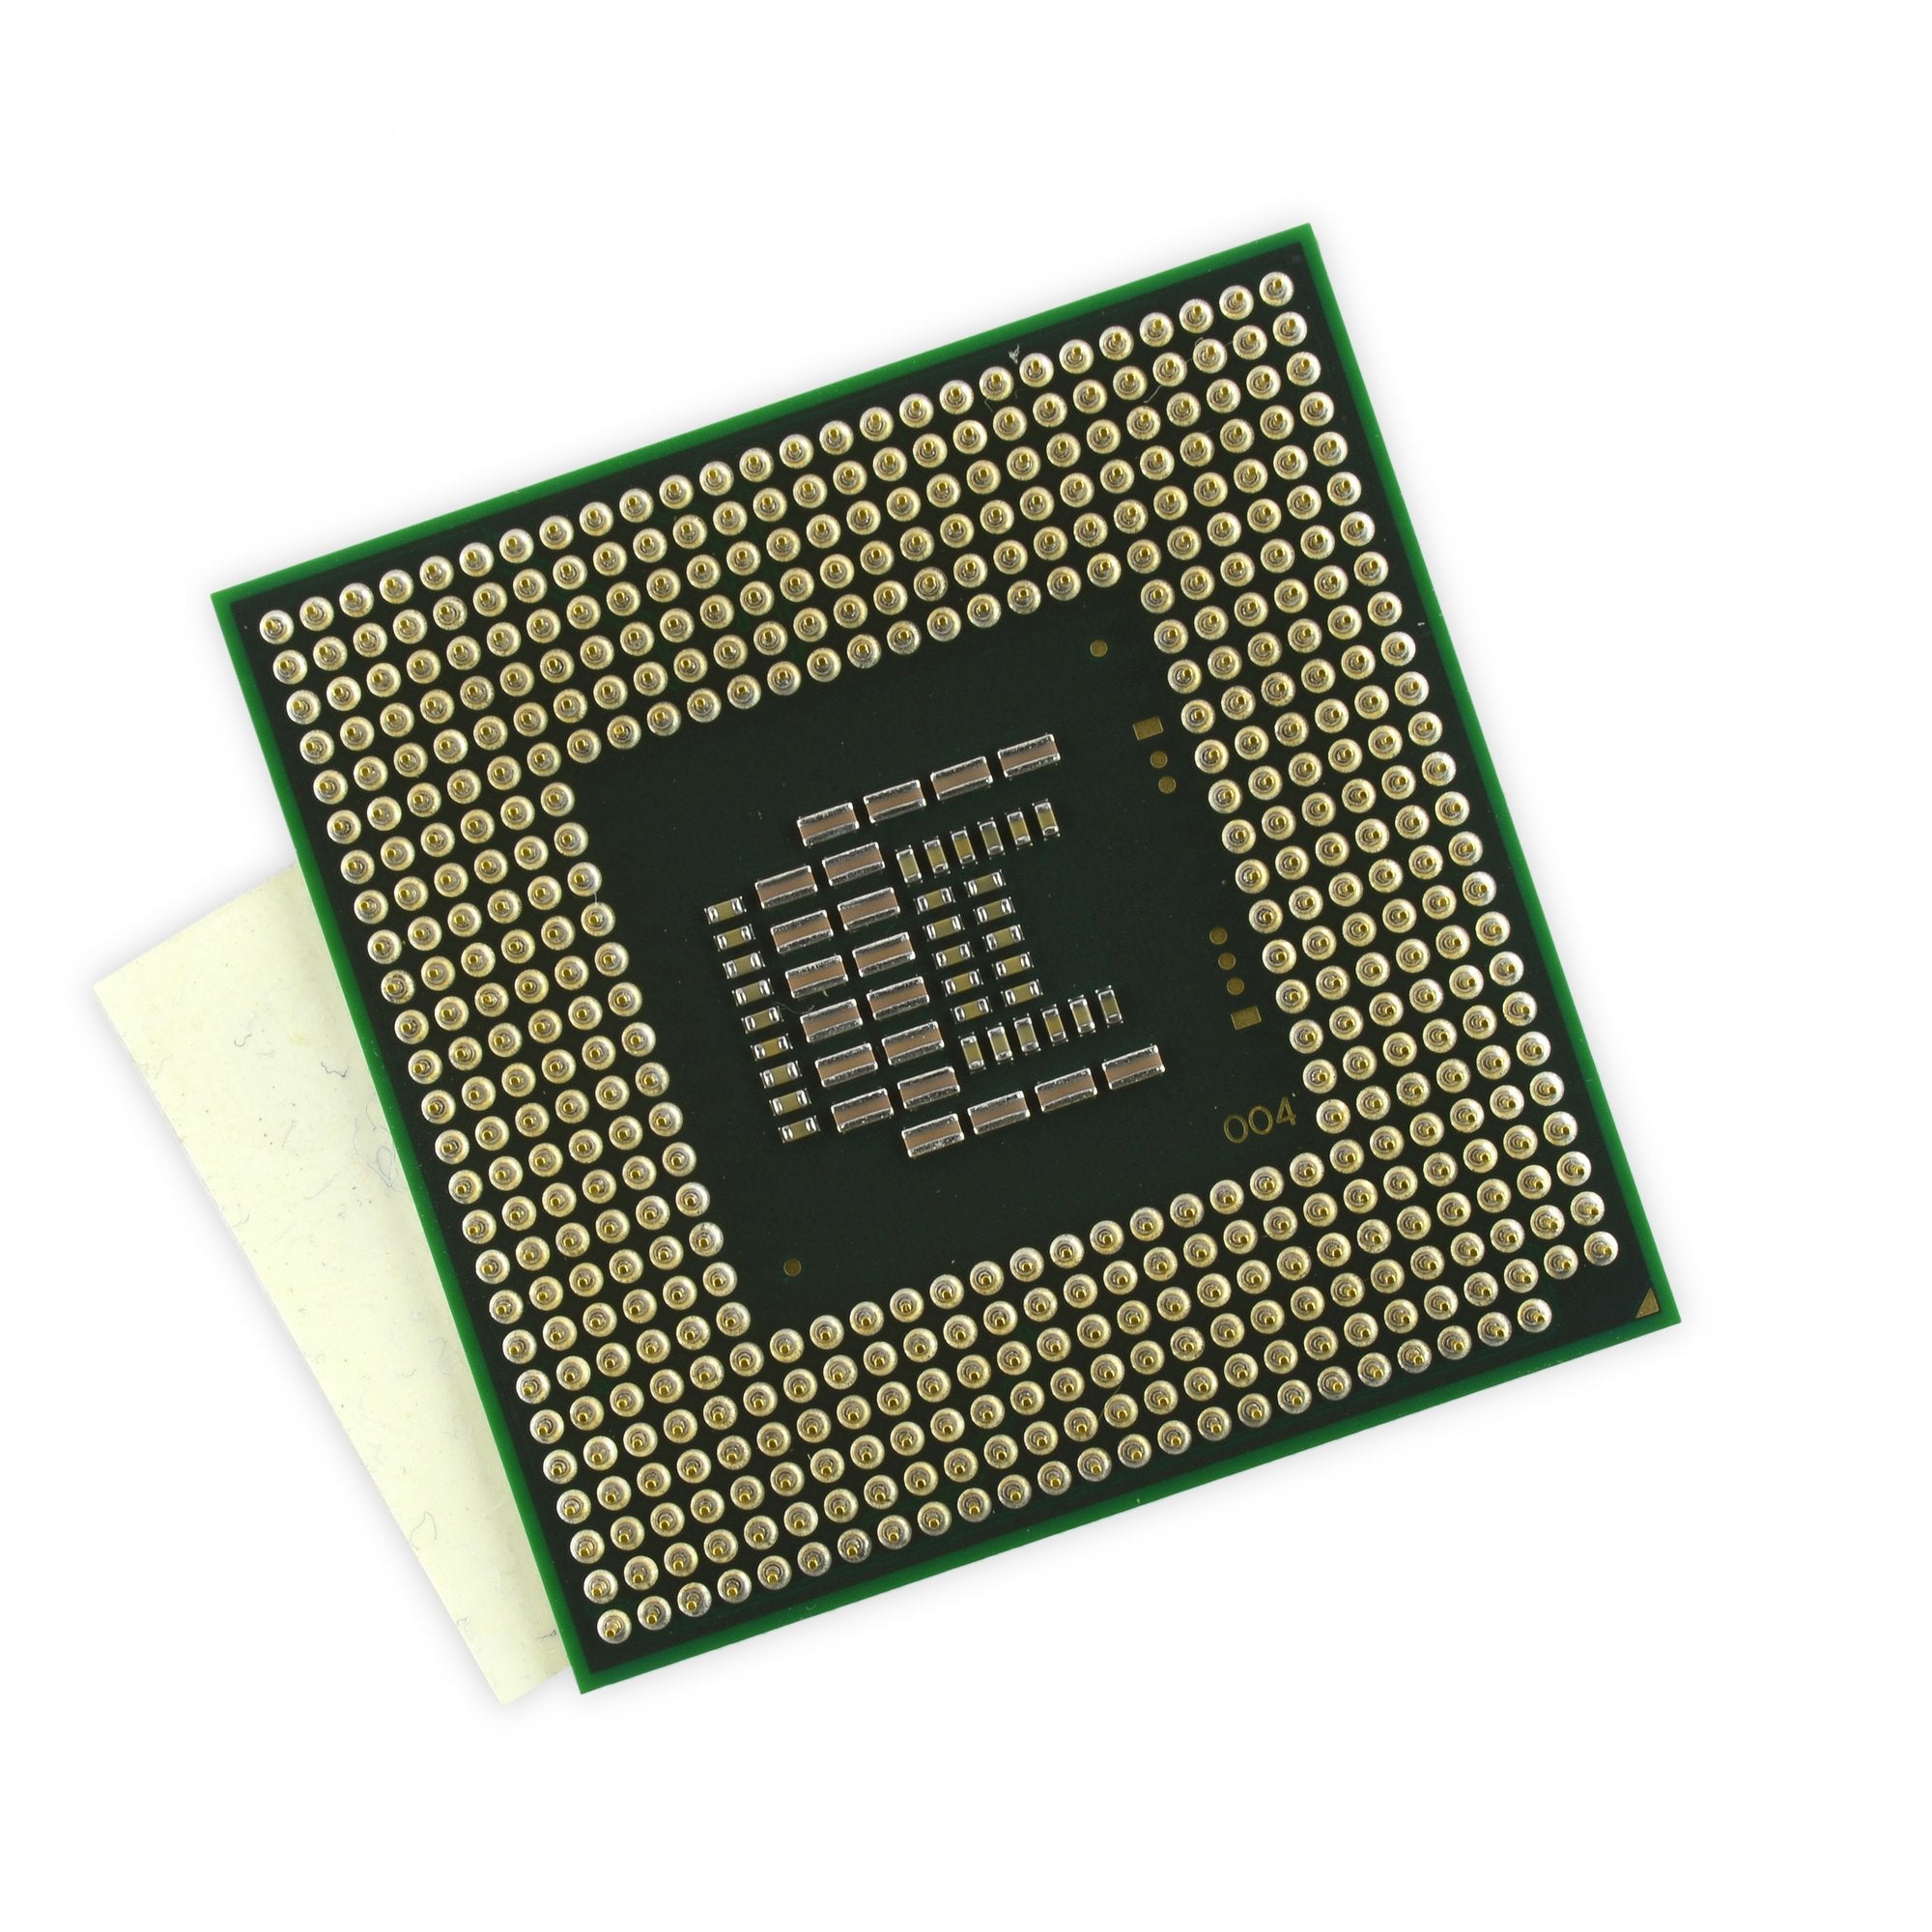 Dell Inspiron 1545 (PP41L) CPU